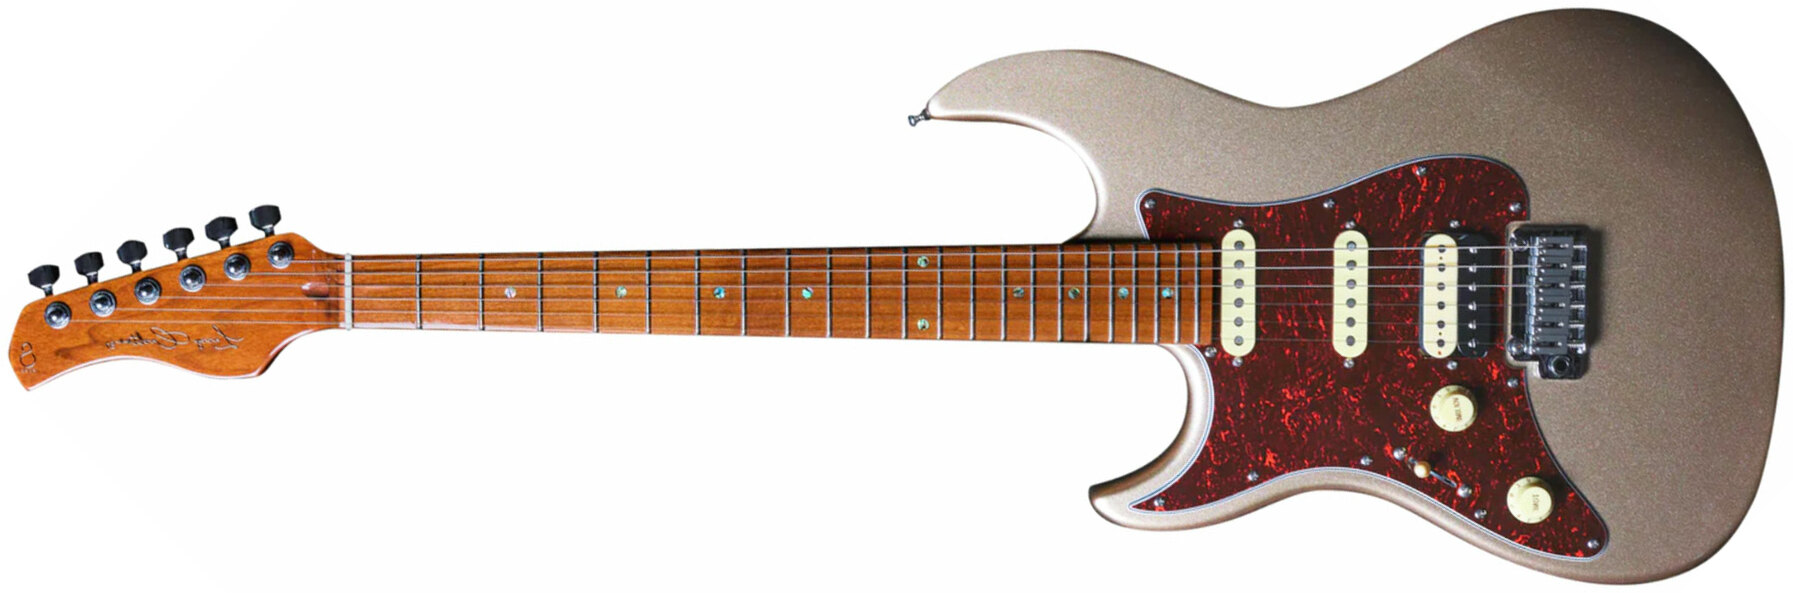 Sire Larry Carlton S7 Lh Signature Gaucher Hss Trem Mn - Champagne Gold Metal - Guitarra eléctrica con forma de str. - Main picture